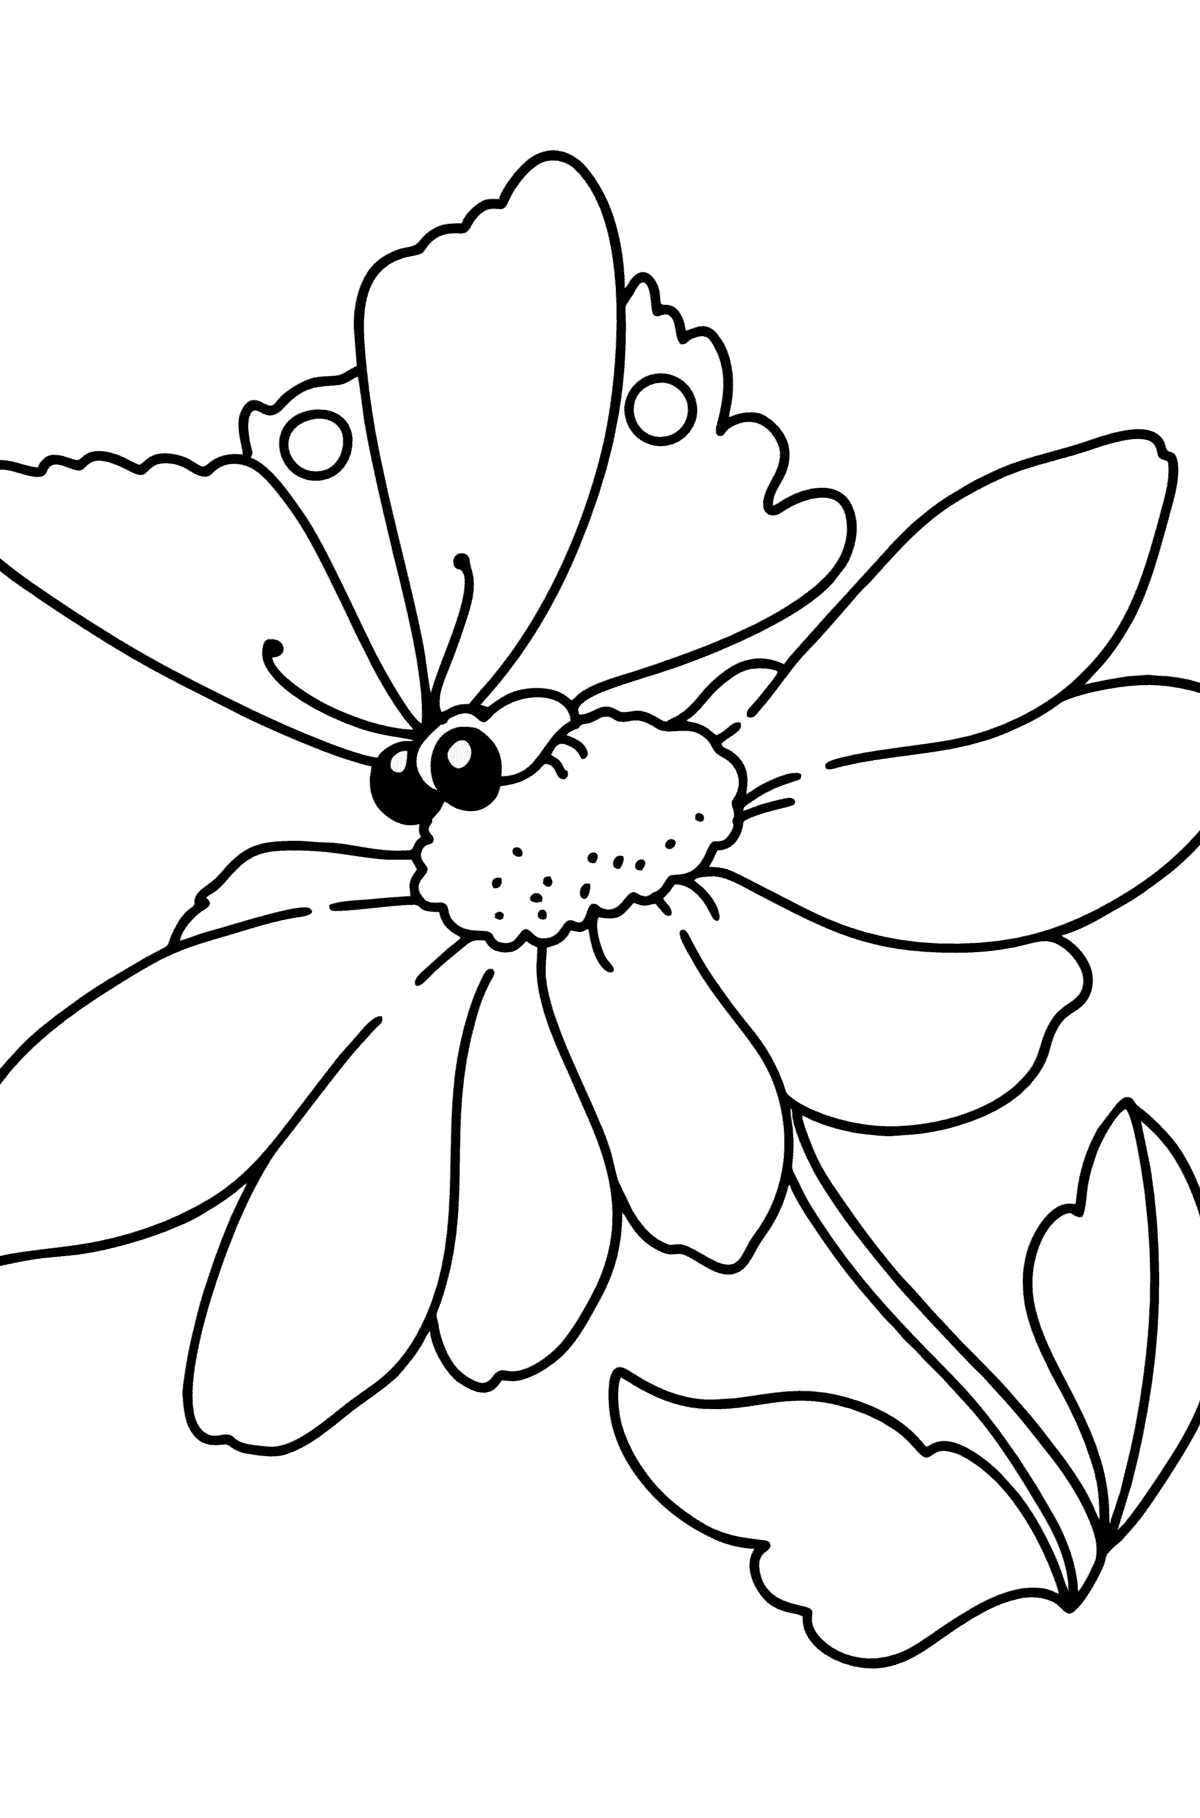 Dibujo para colorear Verano - Flores y mariposas - Dibujos para Colorear para Niños